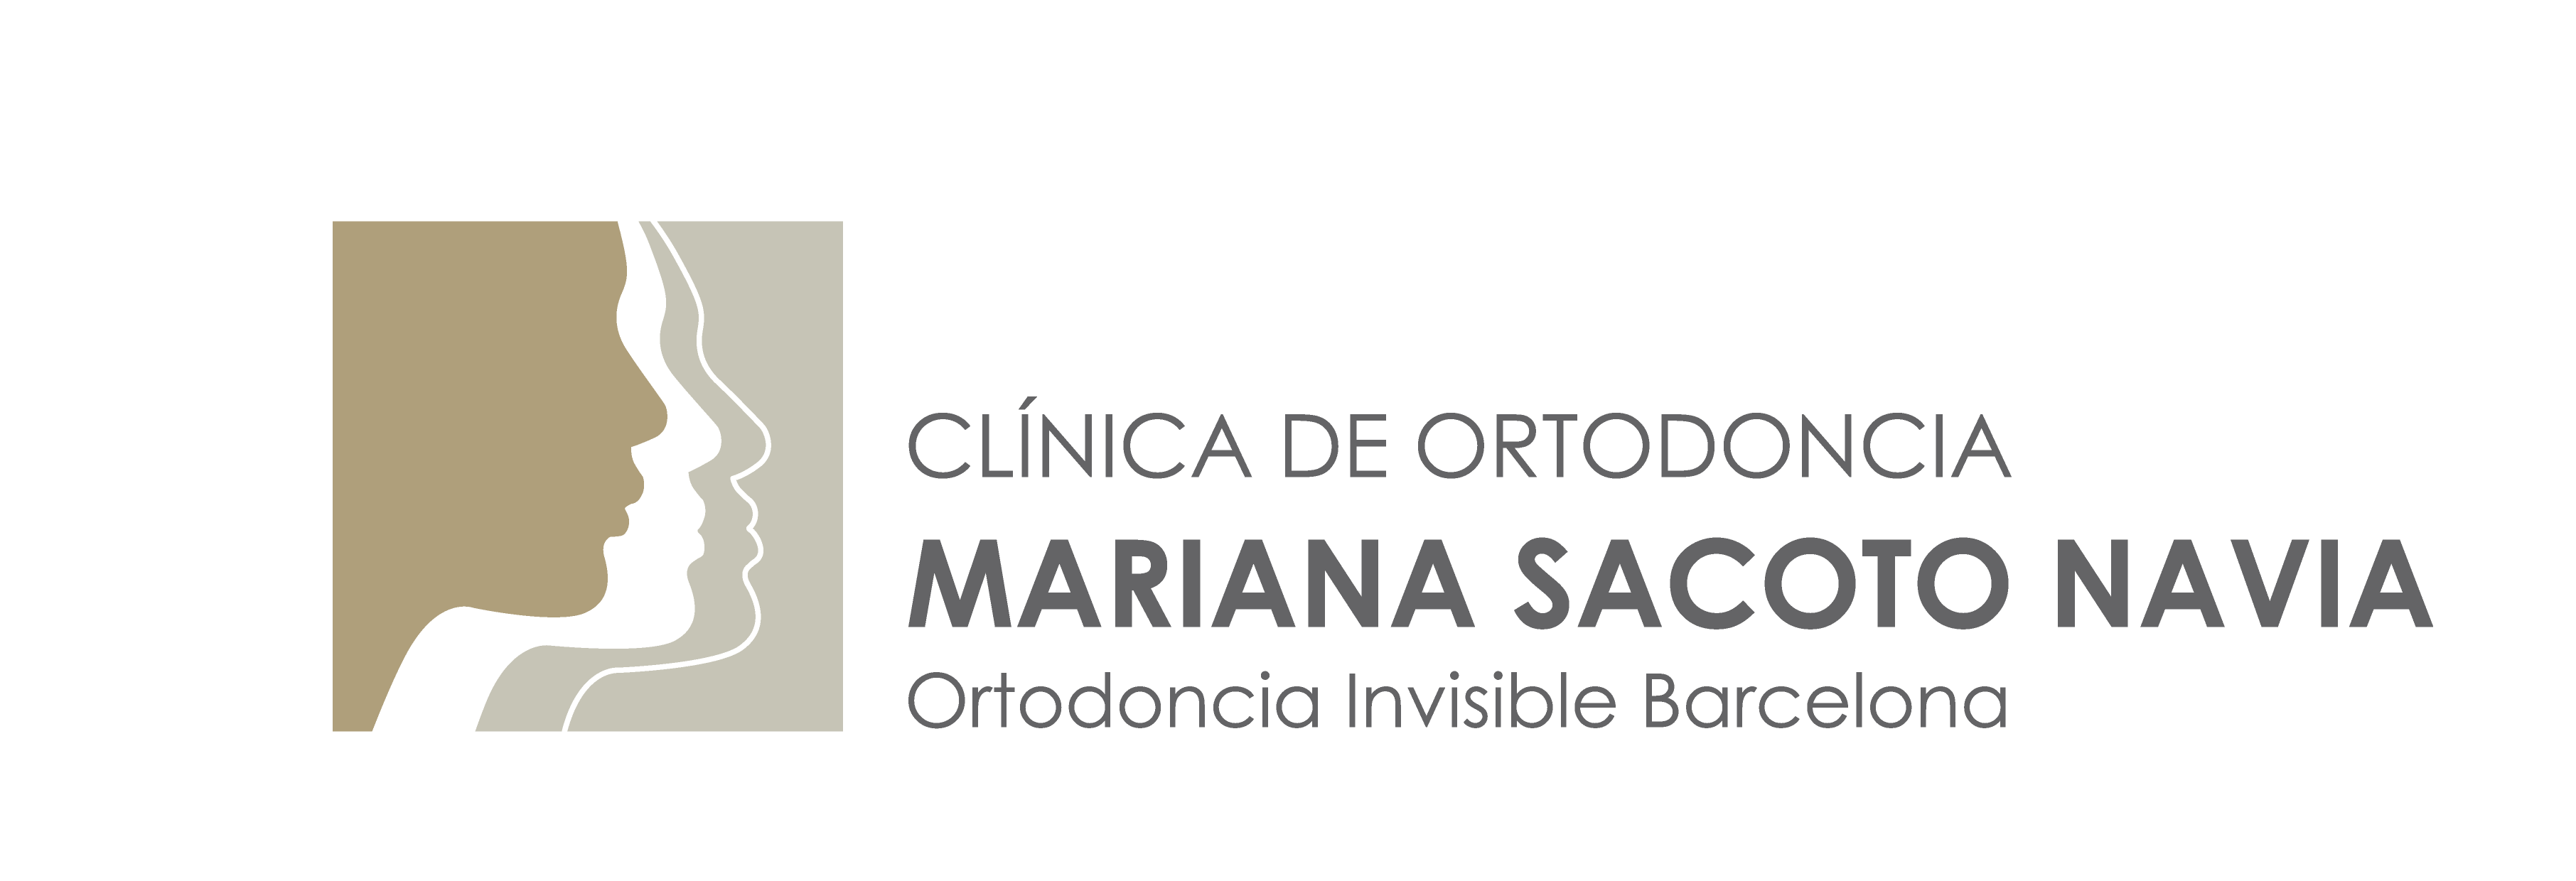 Ortodoncia invisible – Invisalign